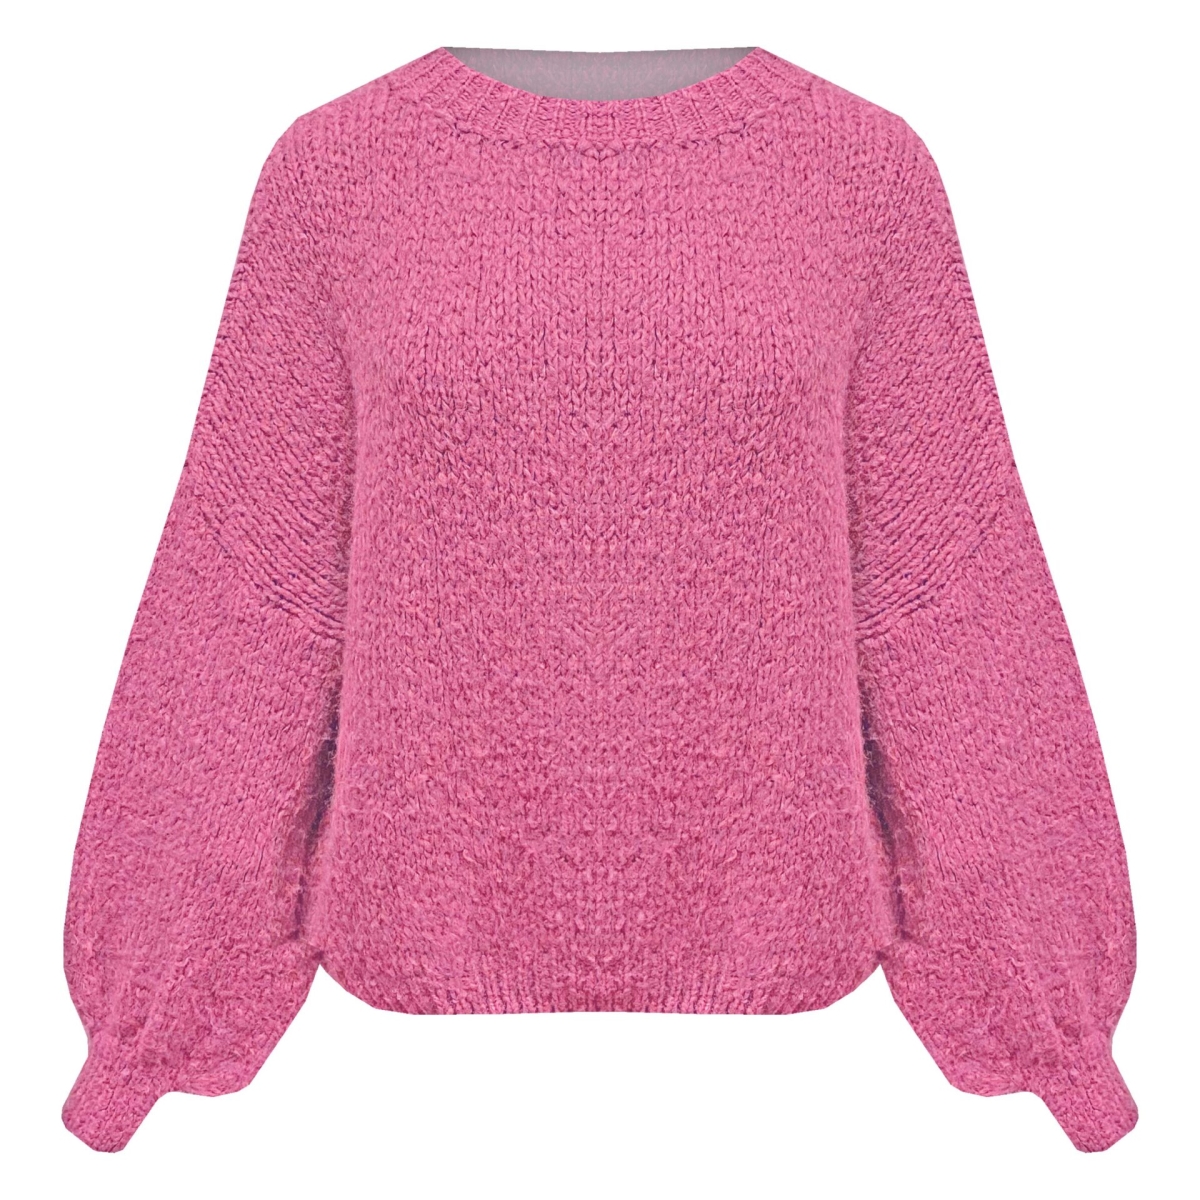 Sweater Kimberly pink